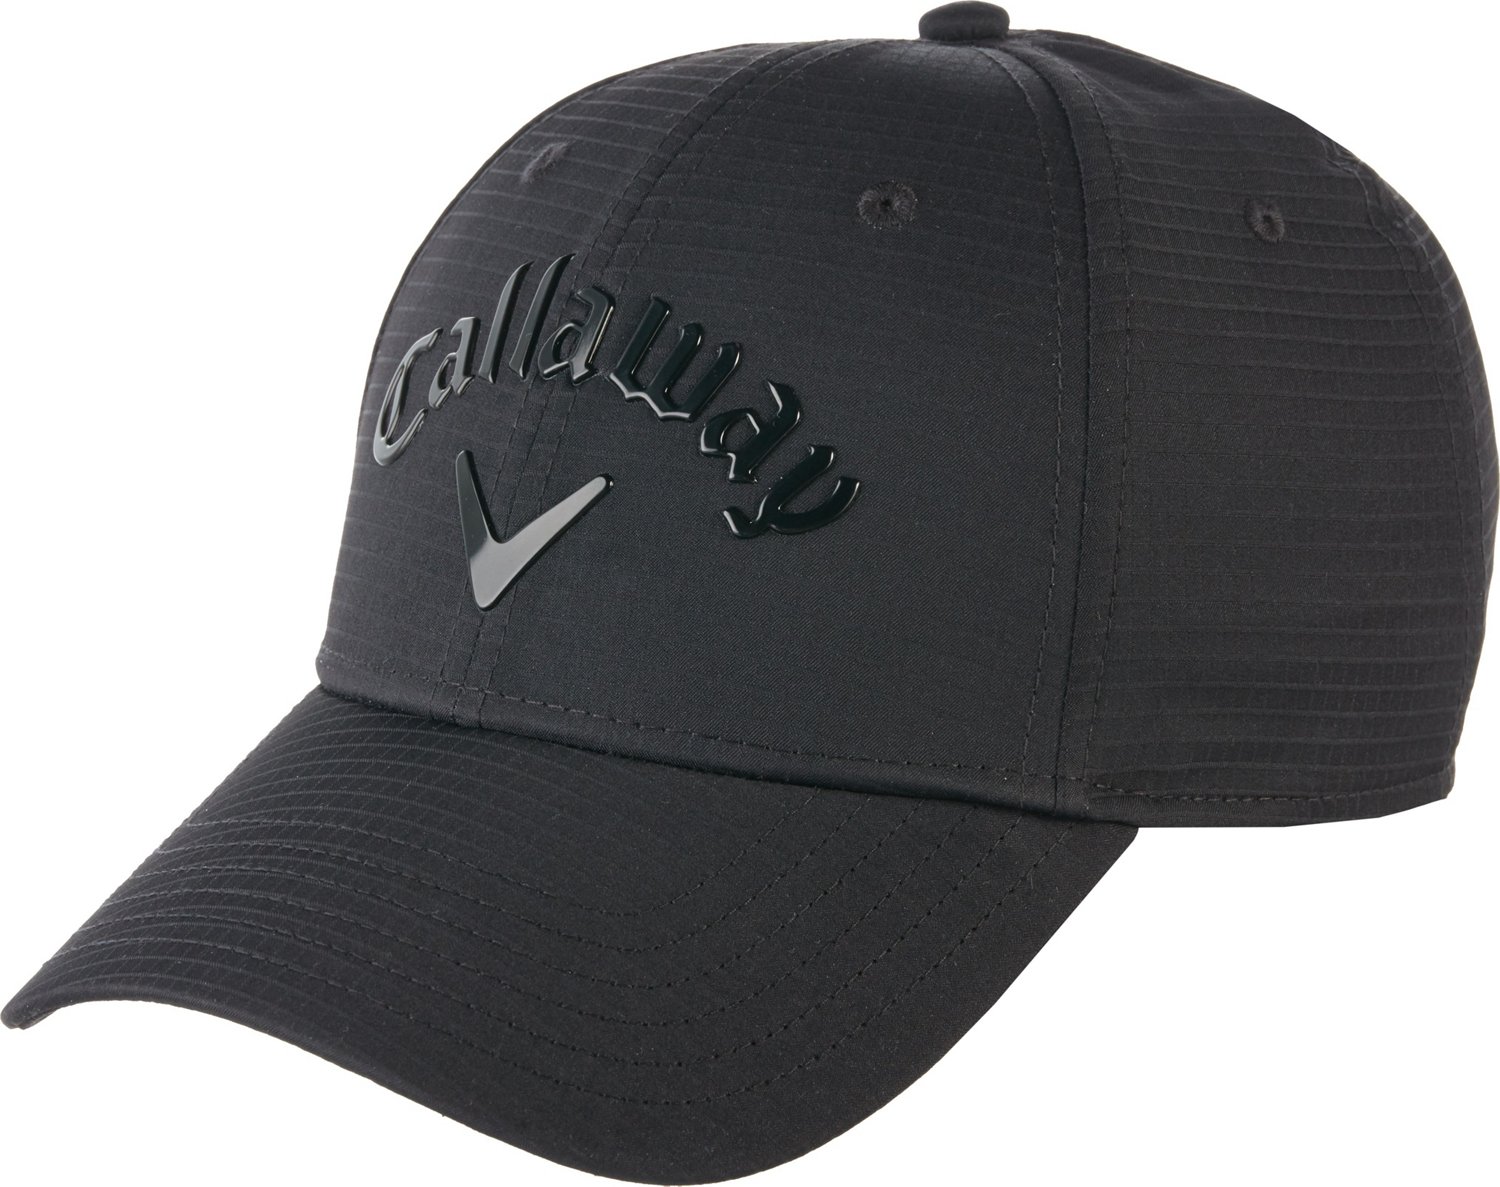 Callaway Liquid Metal Adjustable Hat | Academy